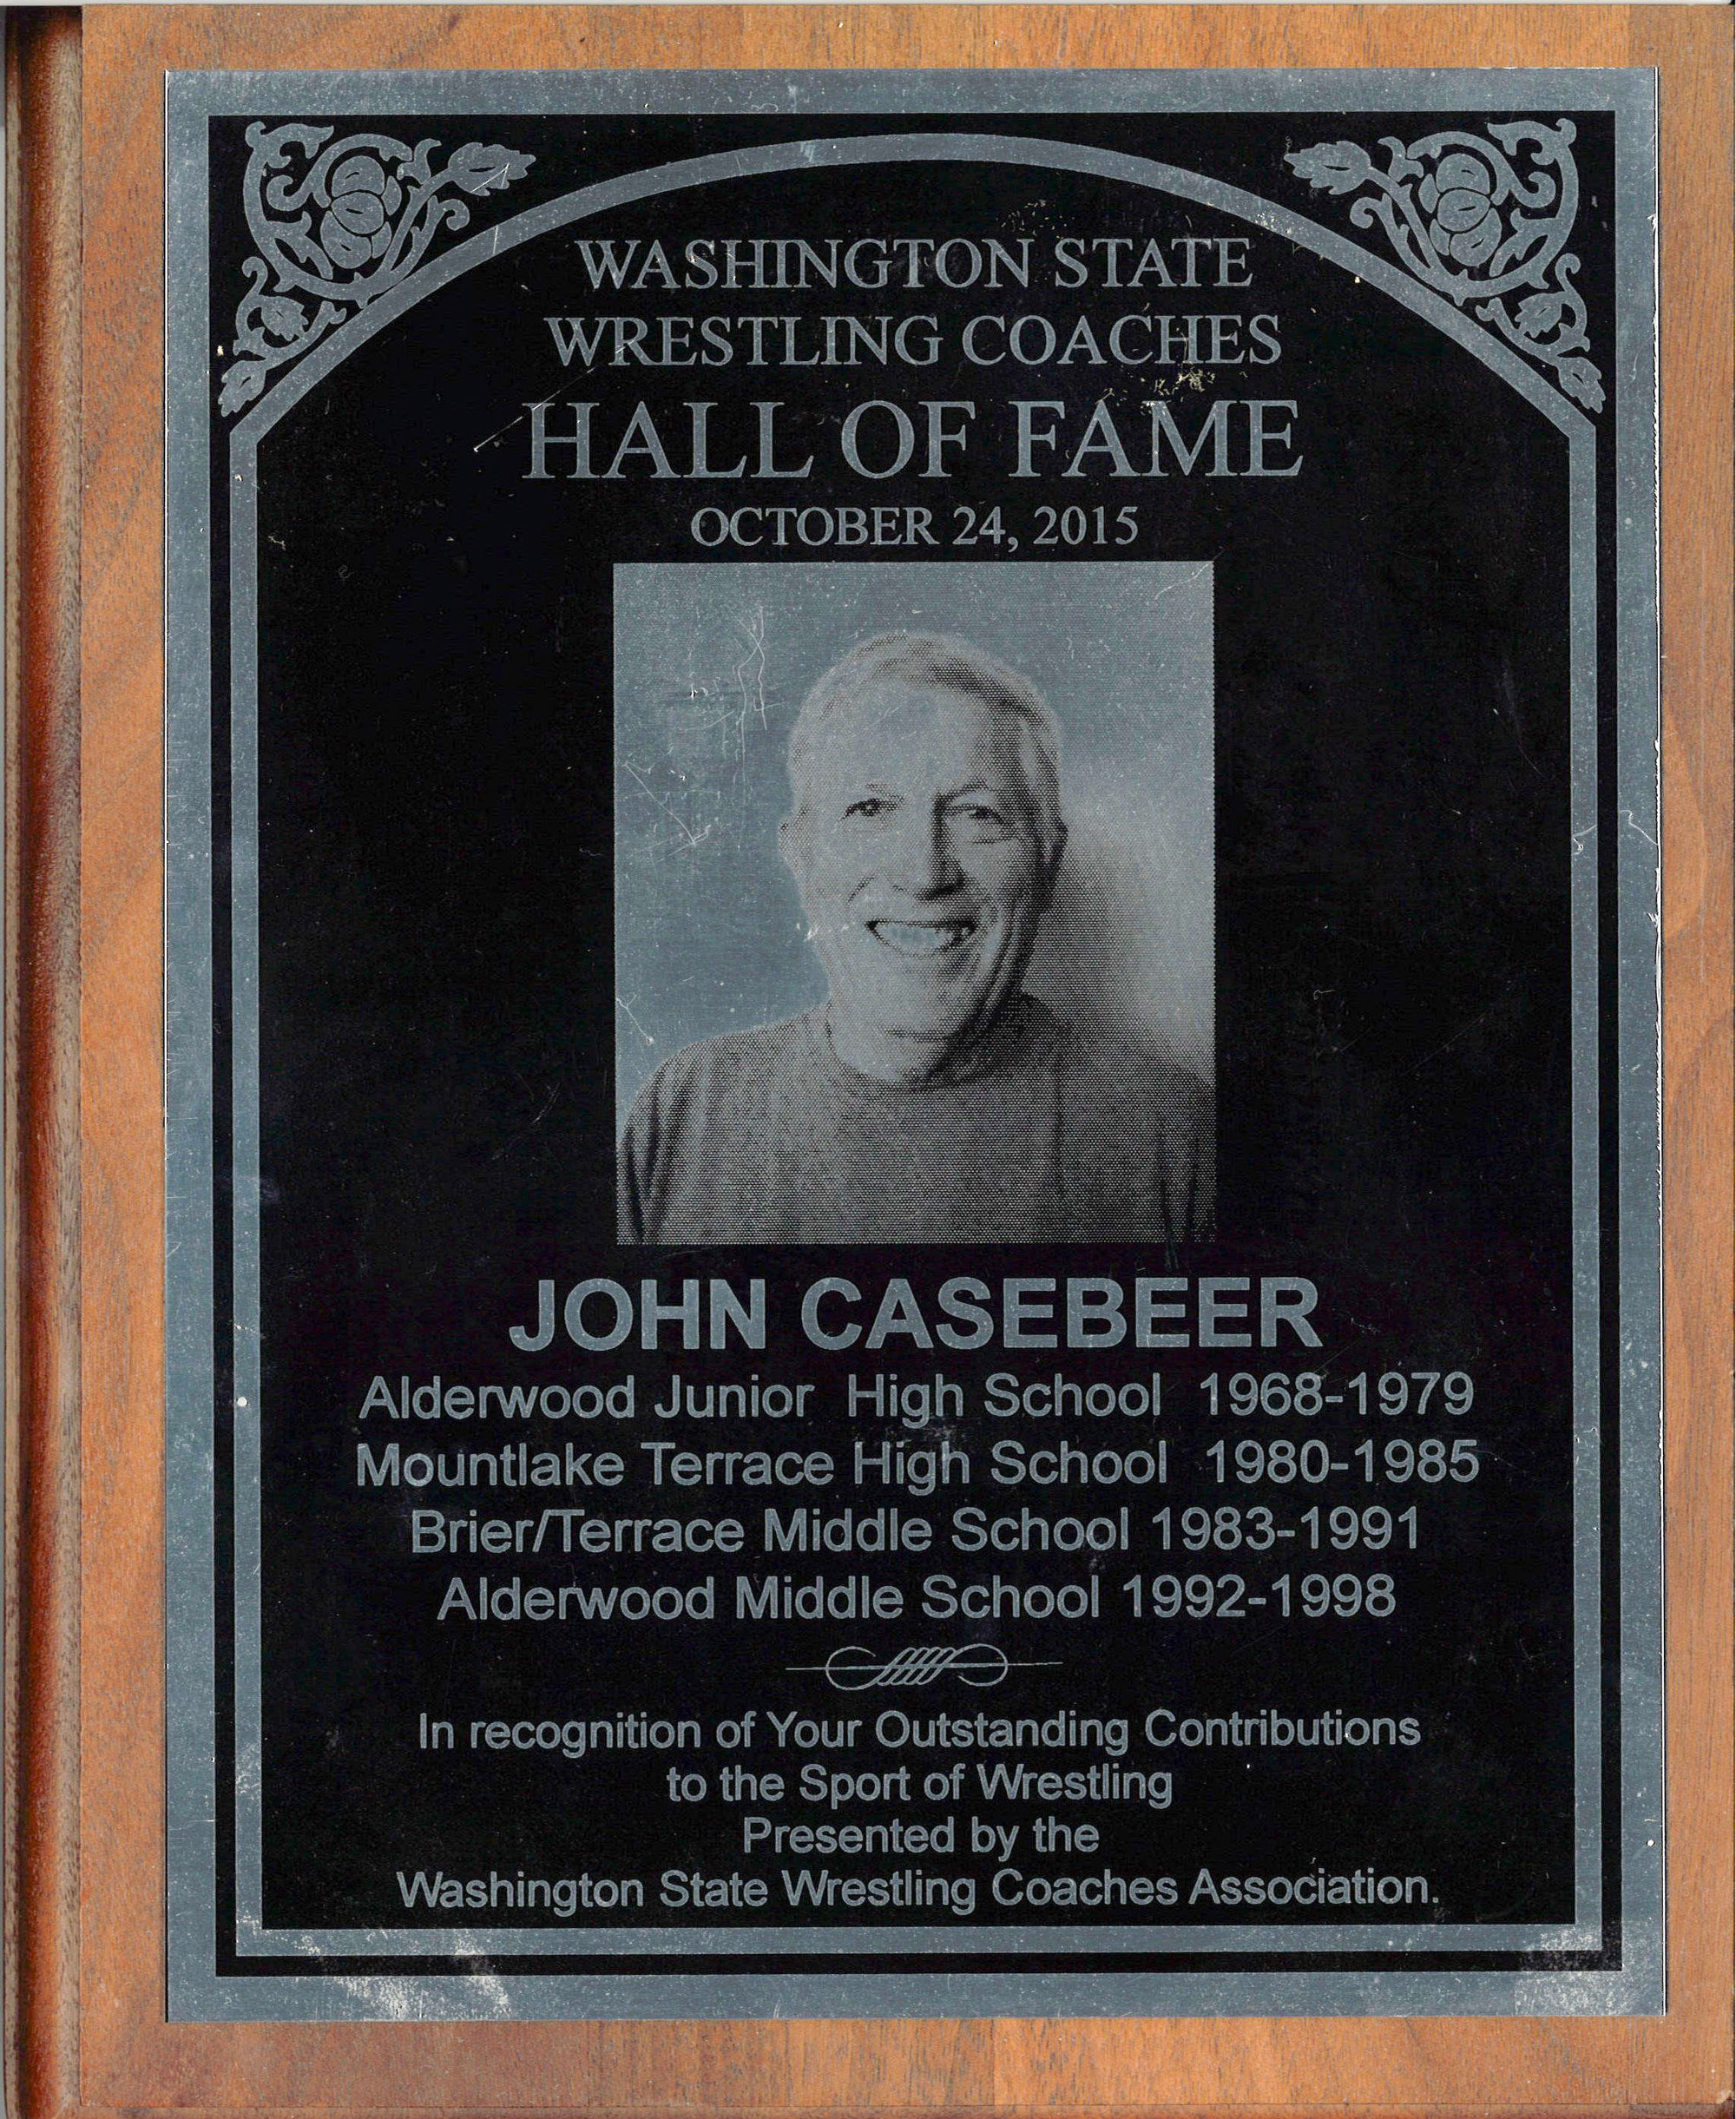 John Casebeer